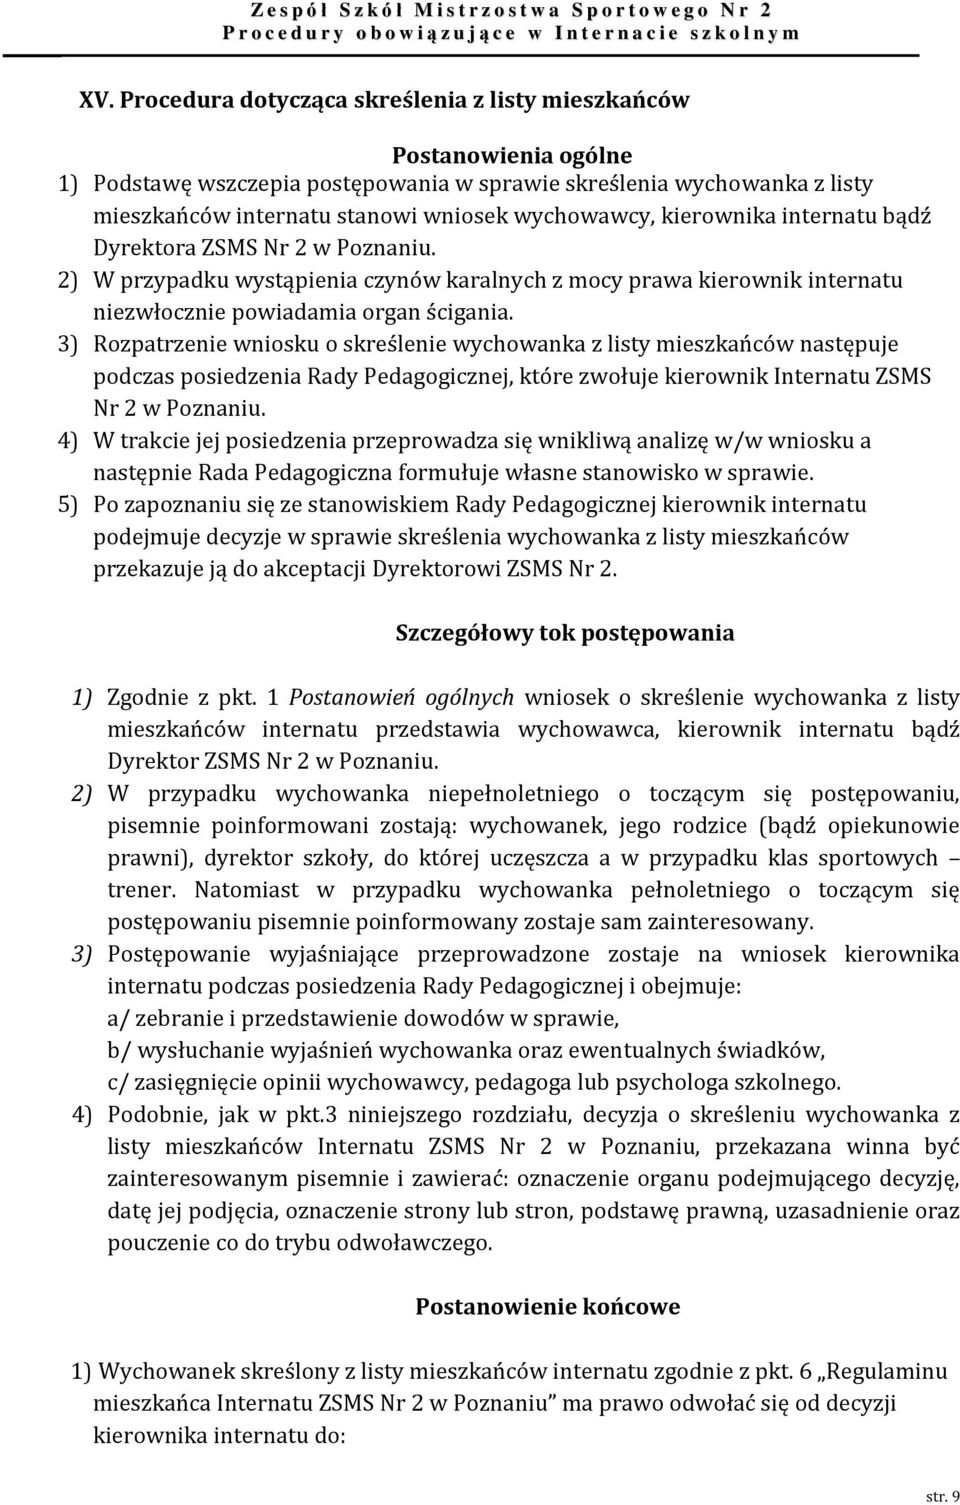 3) Rozpatrzenie wniosku o skreślenie wychowanka z listy mieszkańców następuje podczas posiedzenia Rady Pedagogicznej, które zwołuje kierownik Internatu ZSMS Nr 2 w Poznaniu.